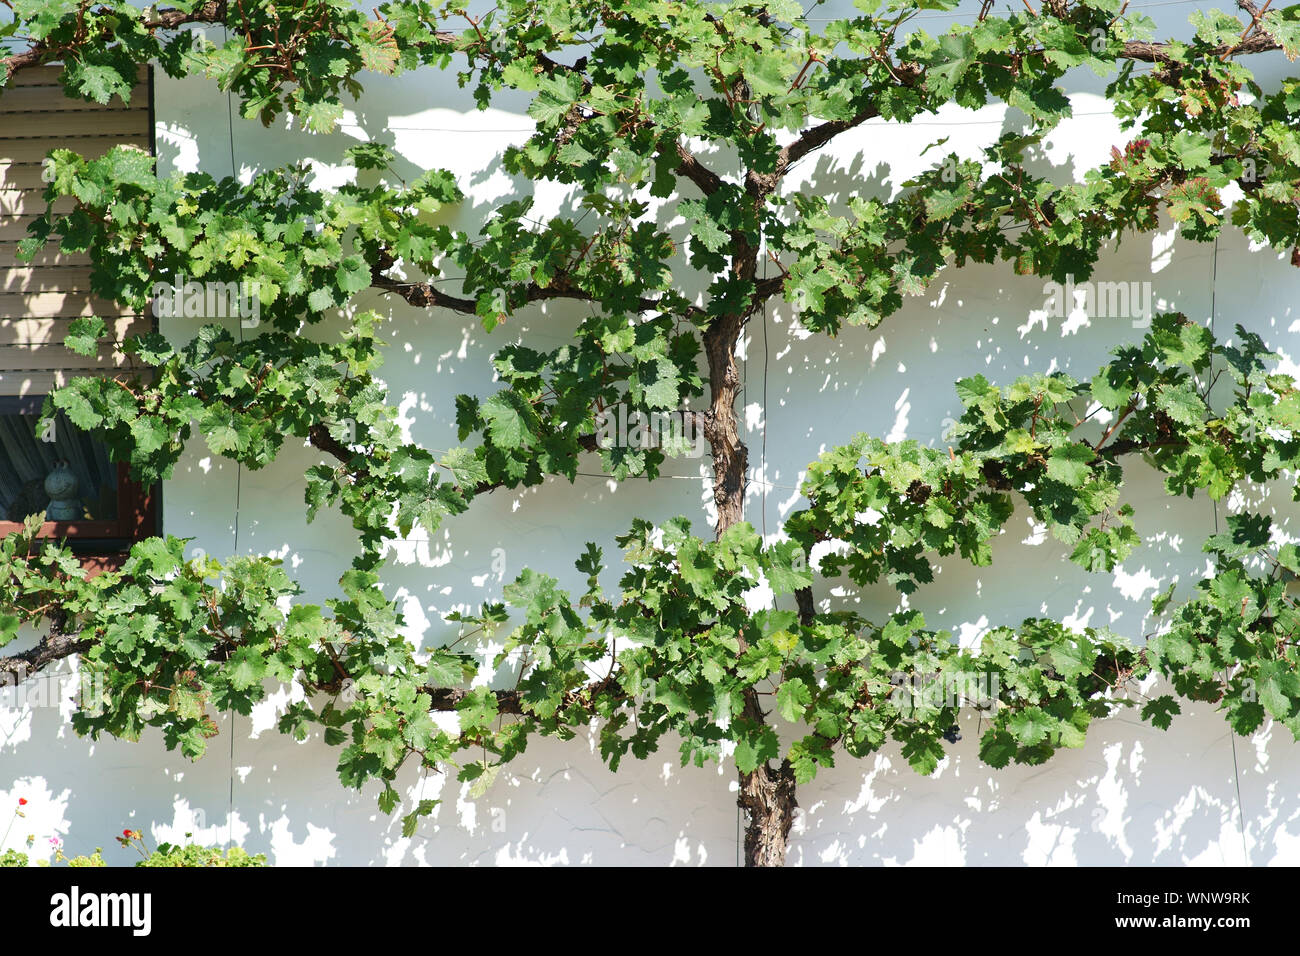 Les feuilles de vigne fraîche et verte sur une façade de plâtre lumineuses ombres jeter. Banque D'Images